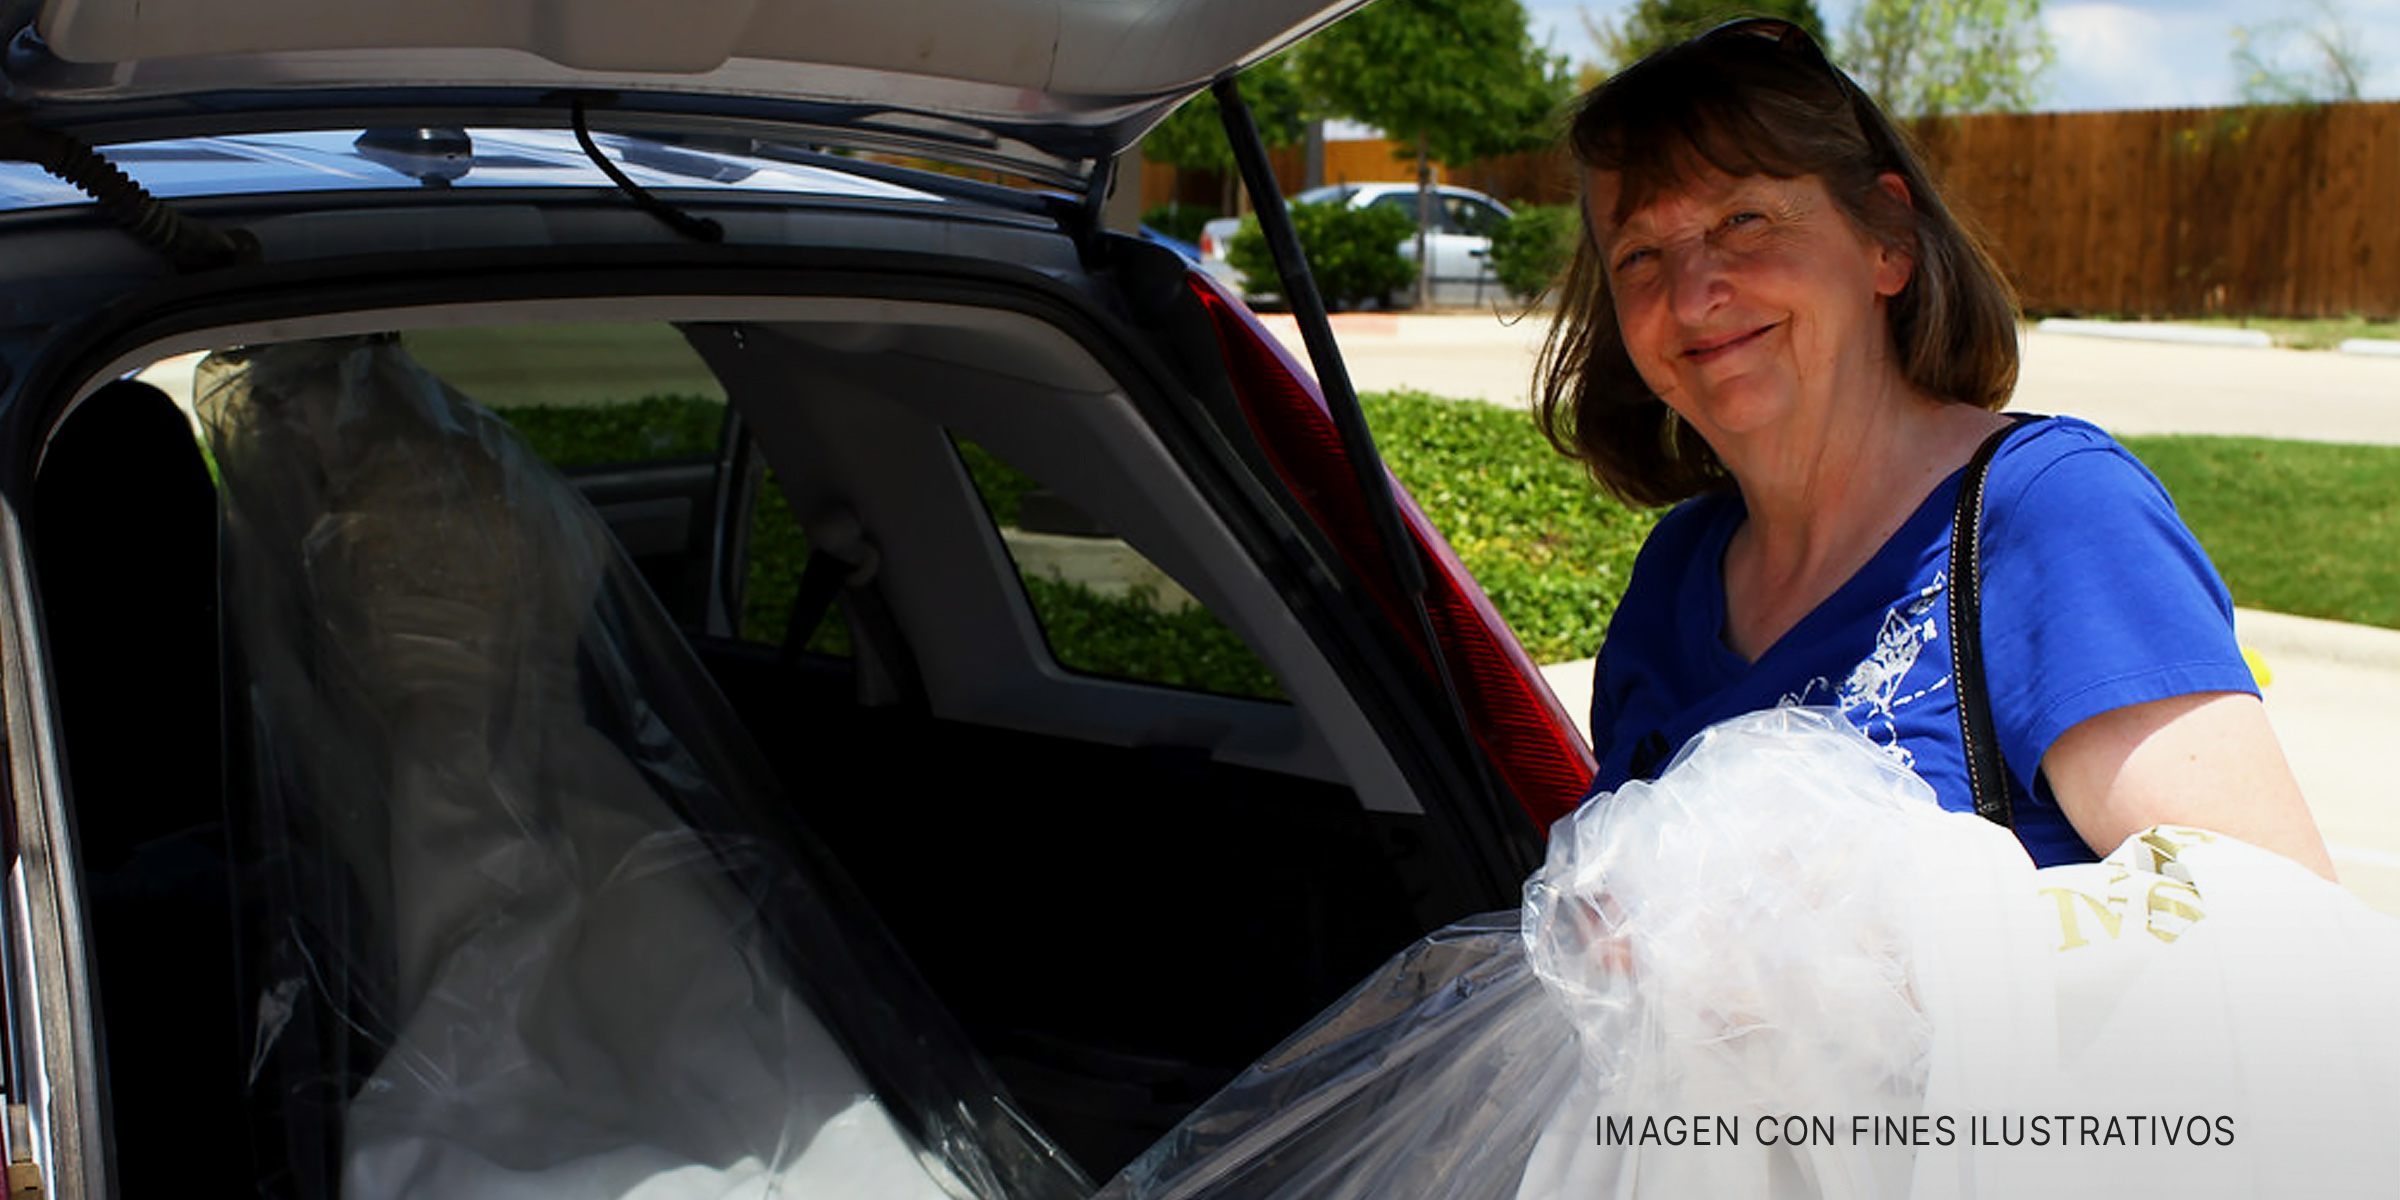 Una anciana sacando un vestido de novia del maletero de su Automóvil | Fuente: Flickr.com/waitscm (CC BY 2.0)